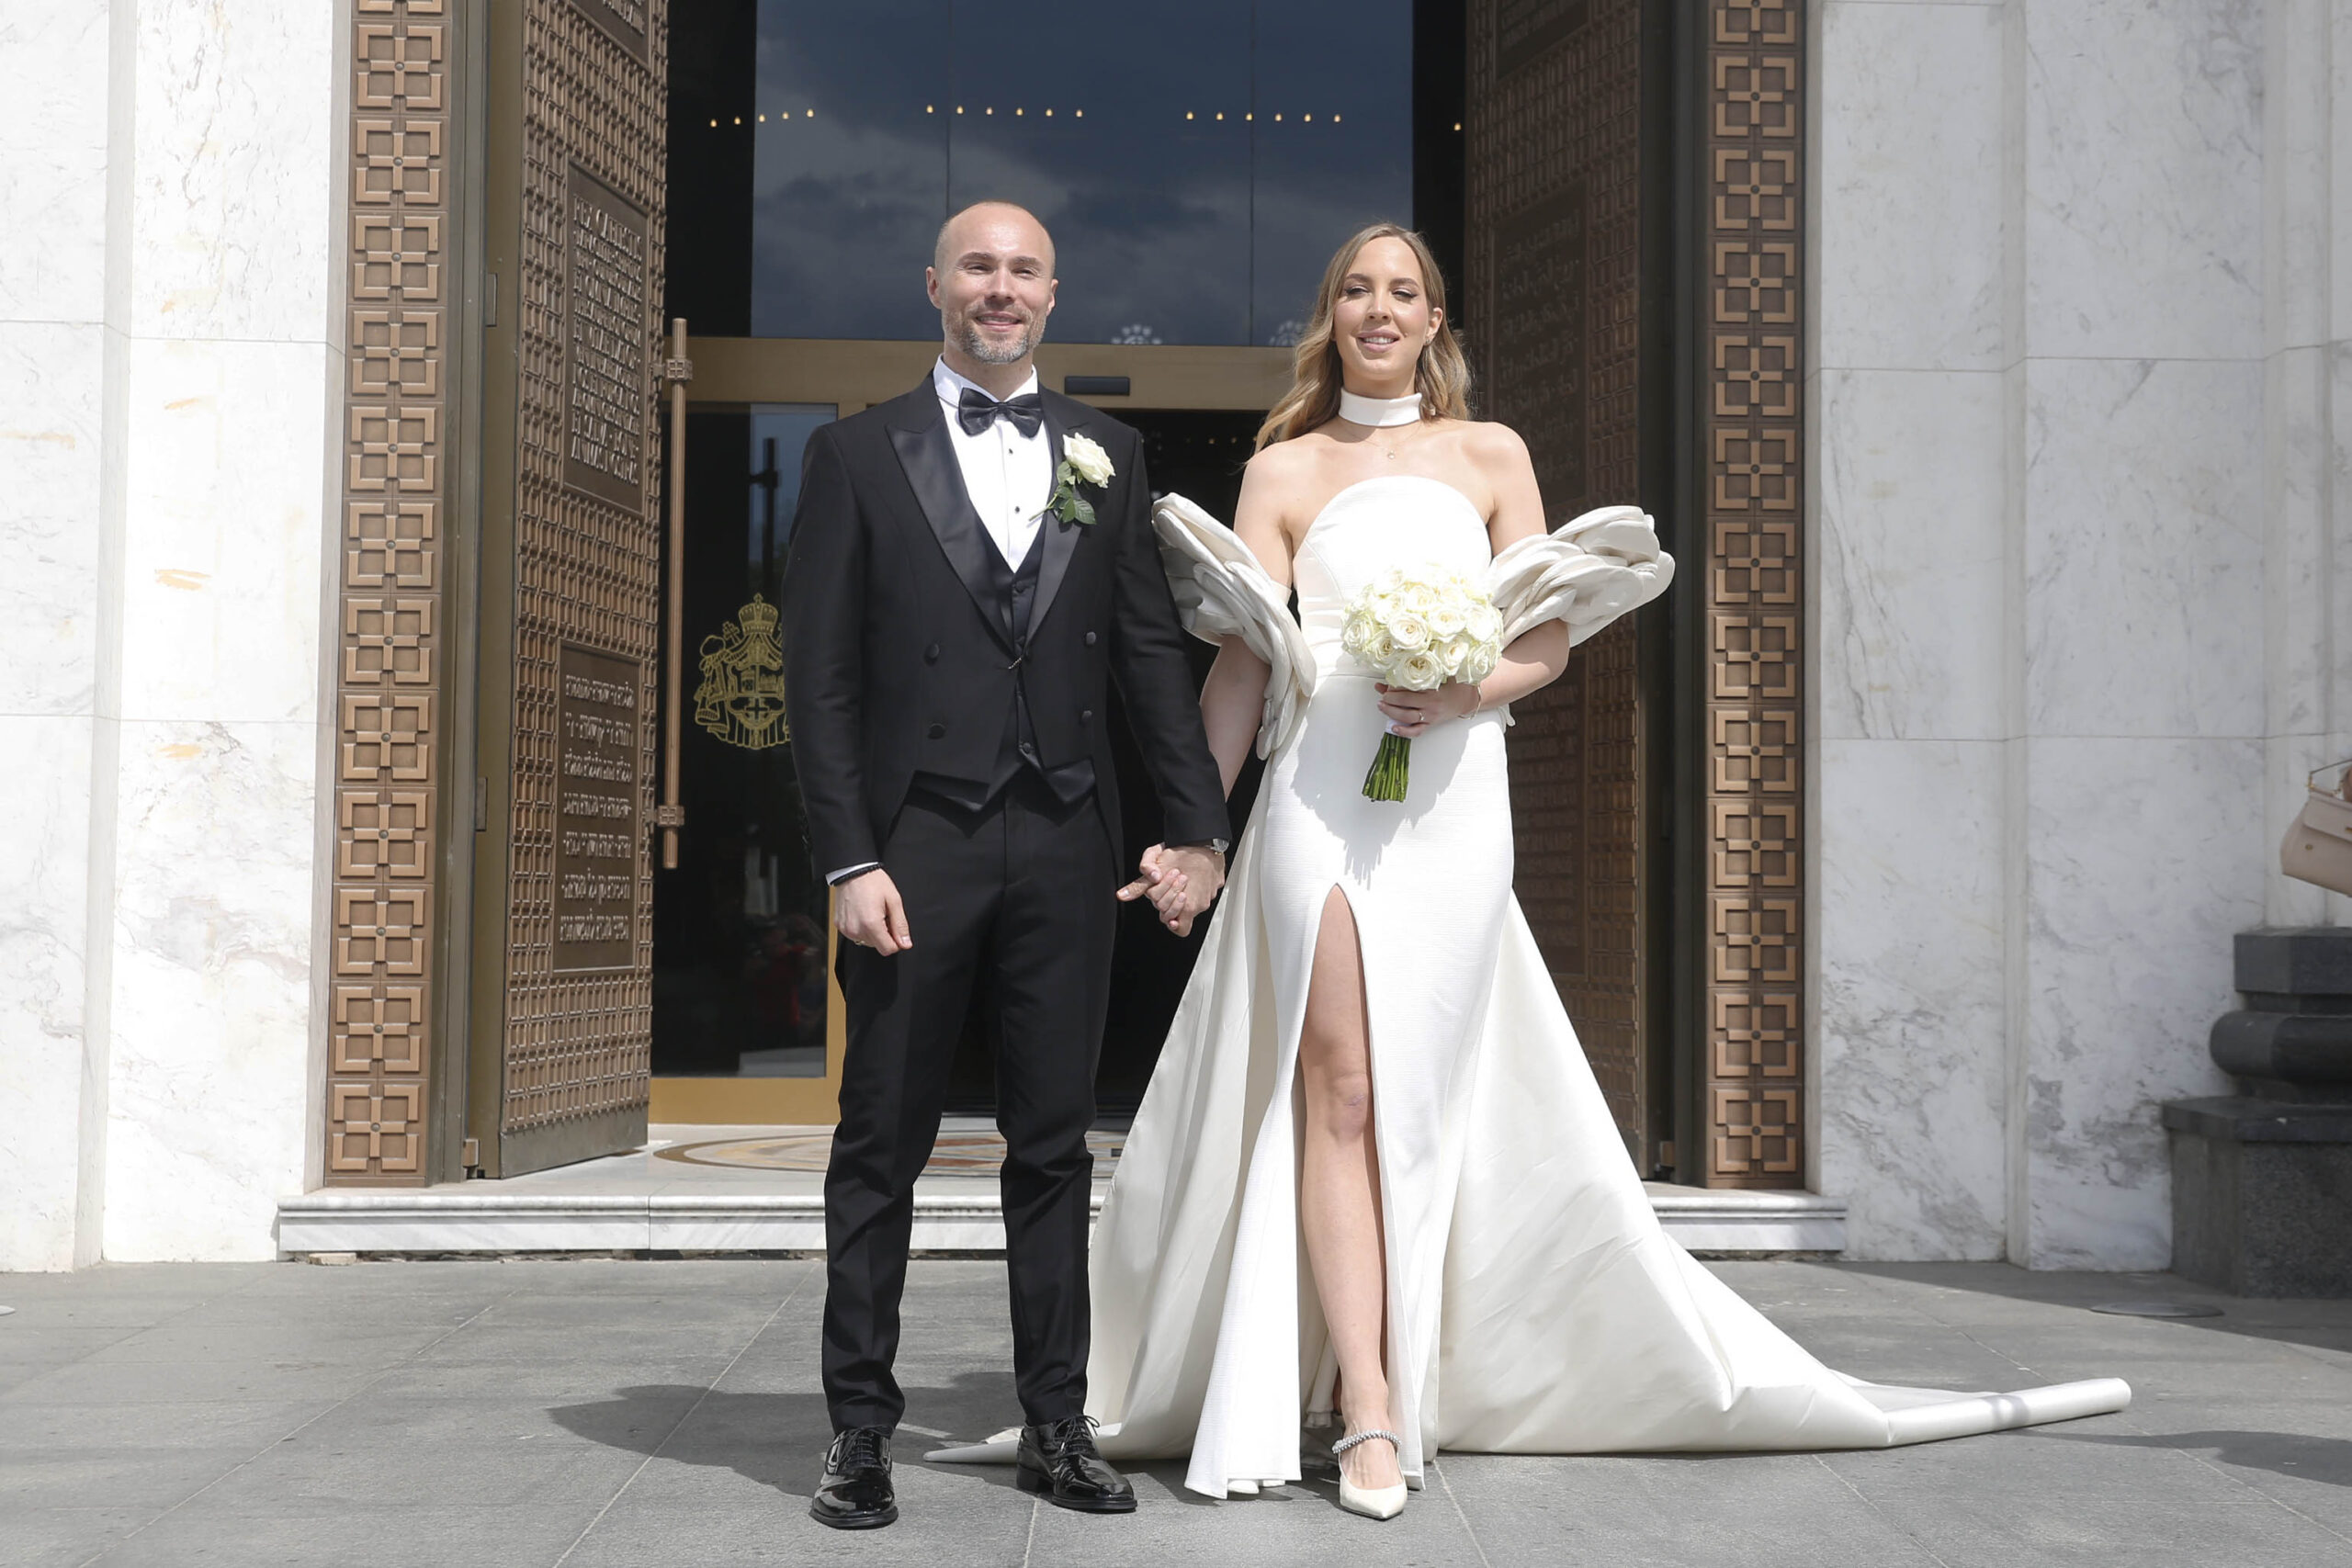 "Burme su kupljene u Milanu": Aleksandar Sofronijević podelio prve utiske nakon venčanja - "Srećan sam što sam našao srodnu dušu" VIDEO